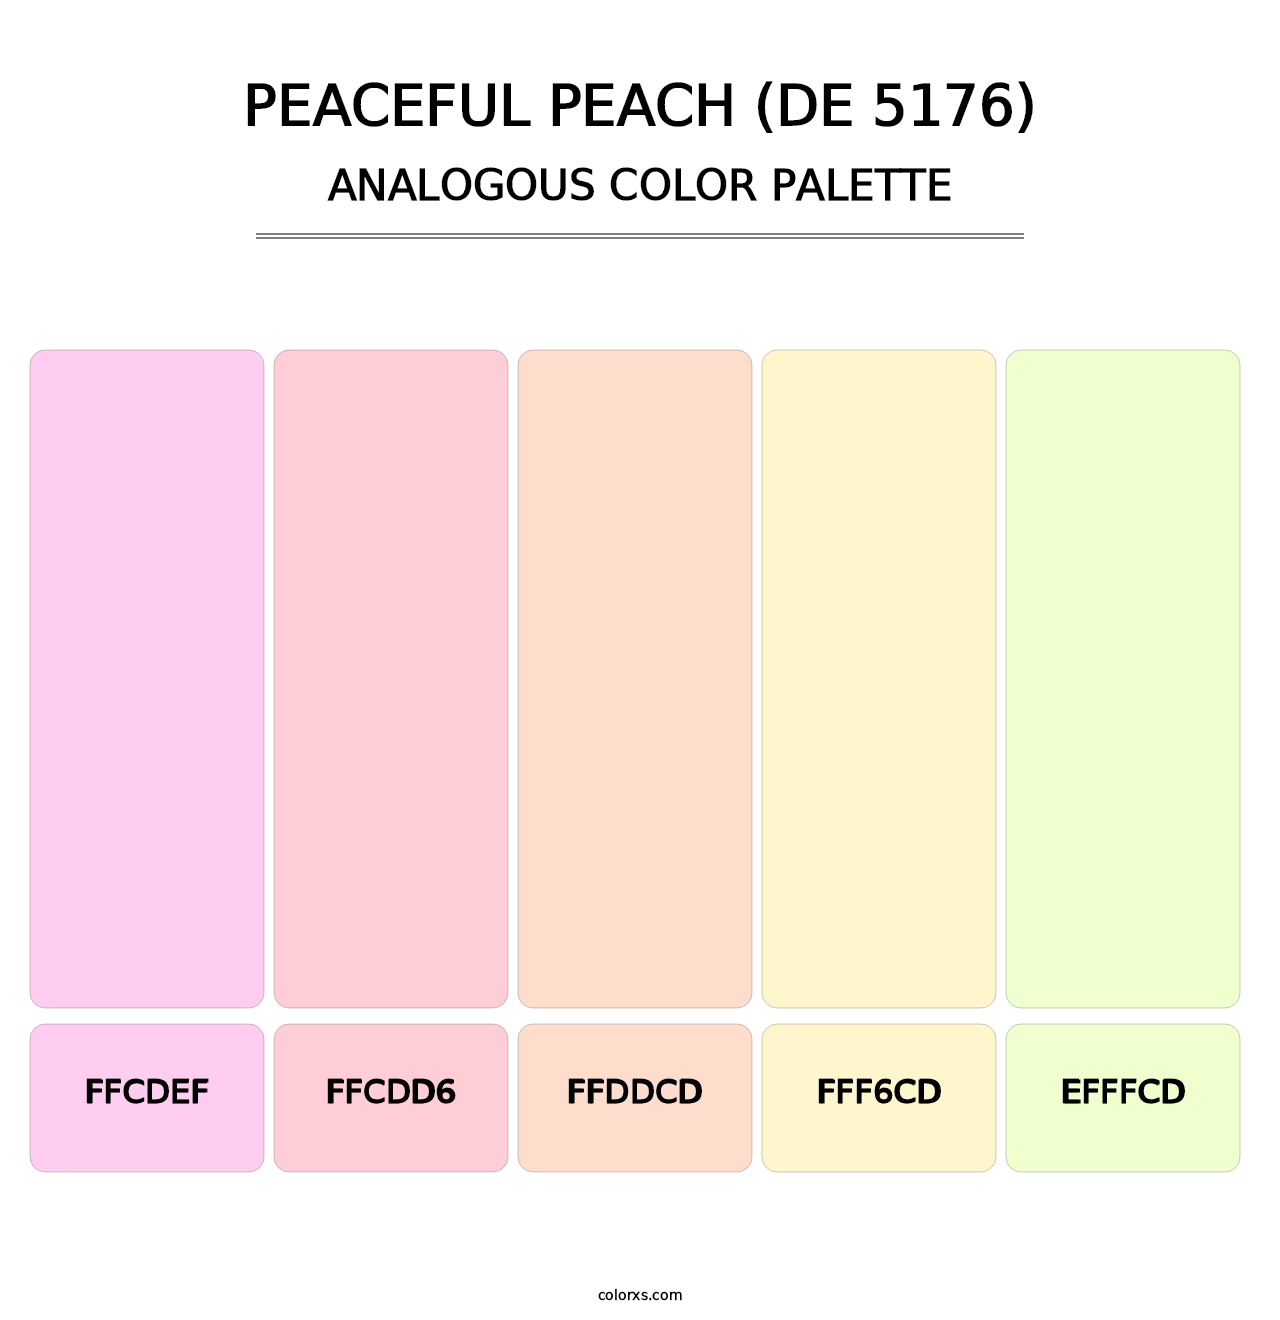 Peaceful Peach (DE 5176) - Analogous Color Palette